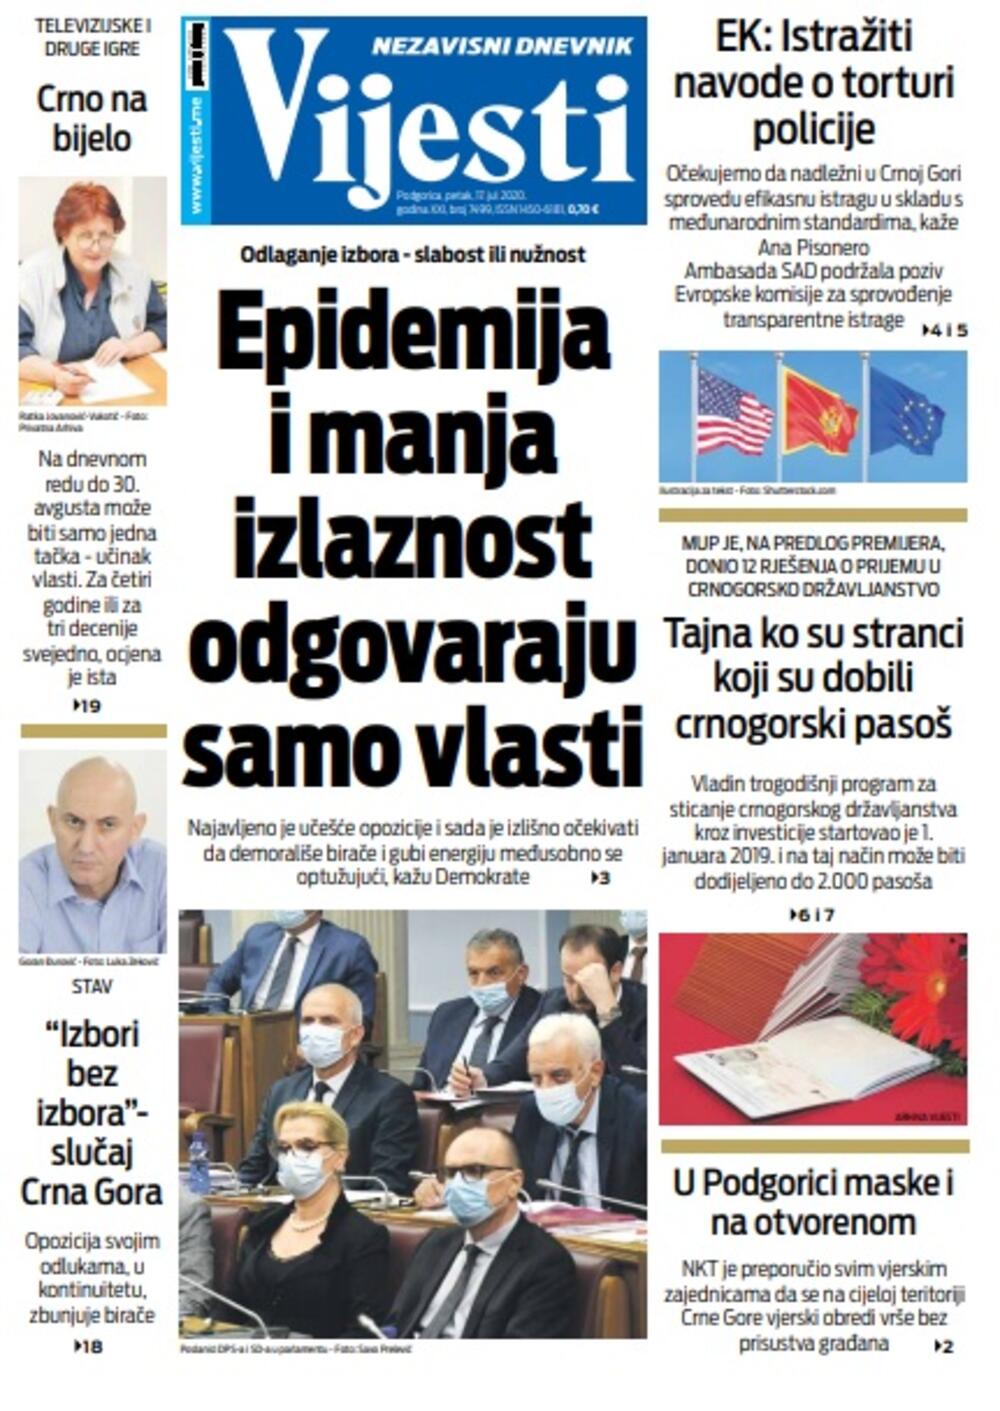 Naslovna strana "Vijesti" za petak 17. jul 2020. godine, Foto: Vijesti